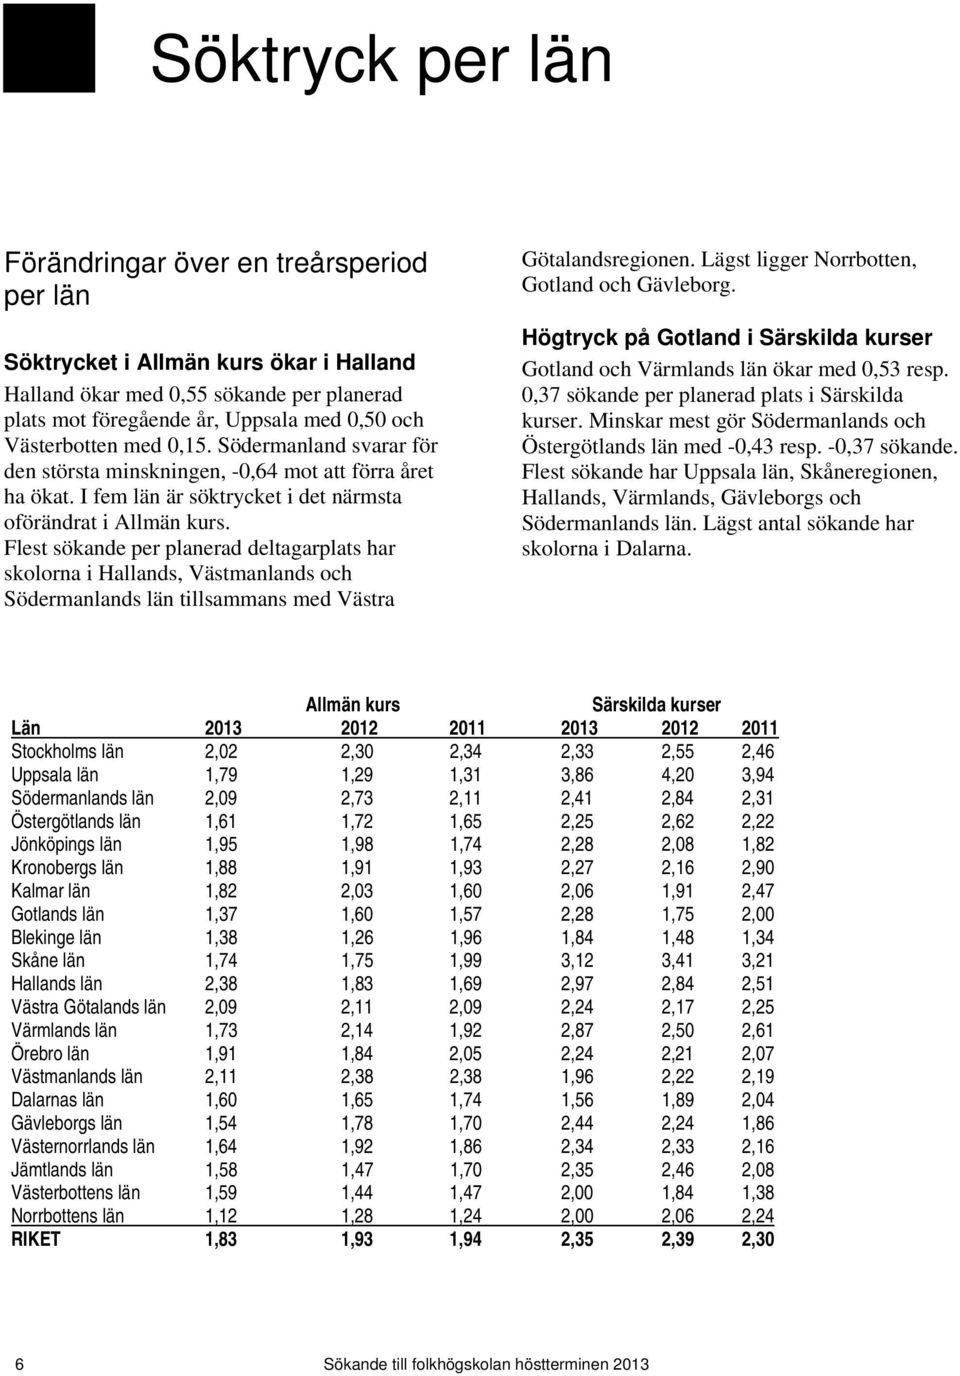 Flest deltagar har skolorna i Hallands, Västmanlands och Södermanlands län tillsammans med Västra Götalandsregionen. Lägst ligger Norrbotten, Gotland och Gävleborg.